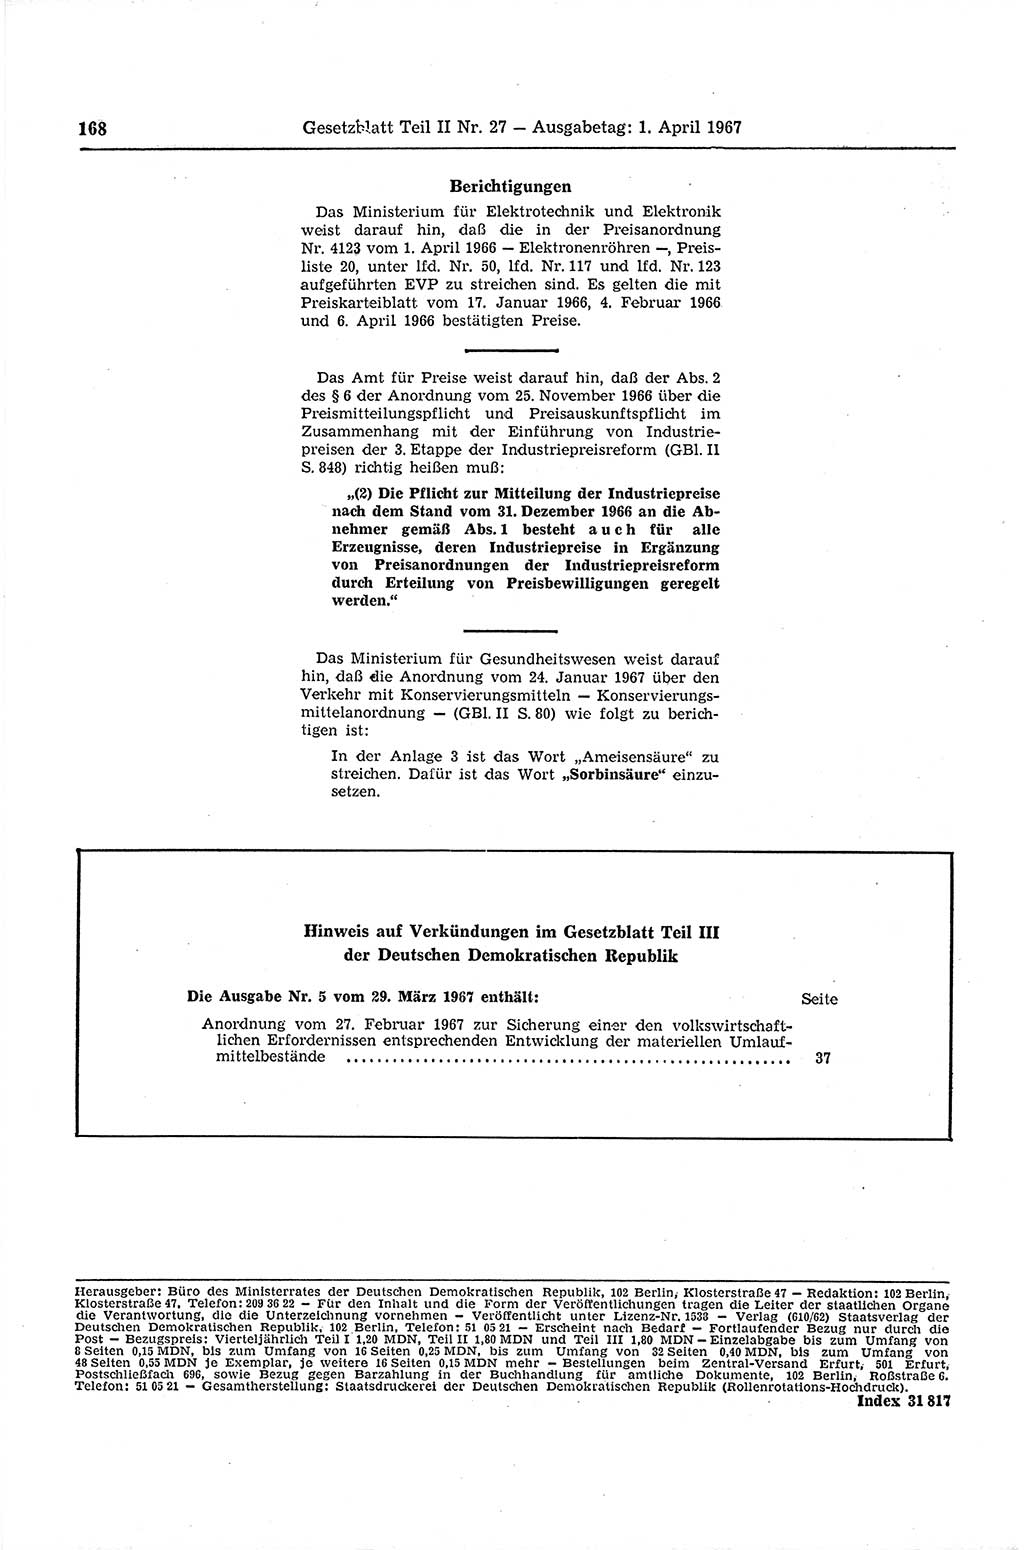 Gesetzblatt (GBl.) der Deutschen Demokratischen Republik (DDR) Teil ⅠⅠ 1967, Seite 168 (GBl. DDR ⅠⅠ 1967, S. 168)